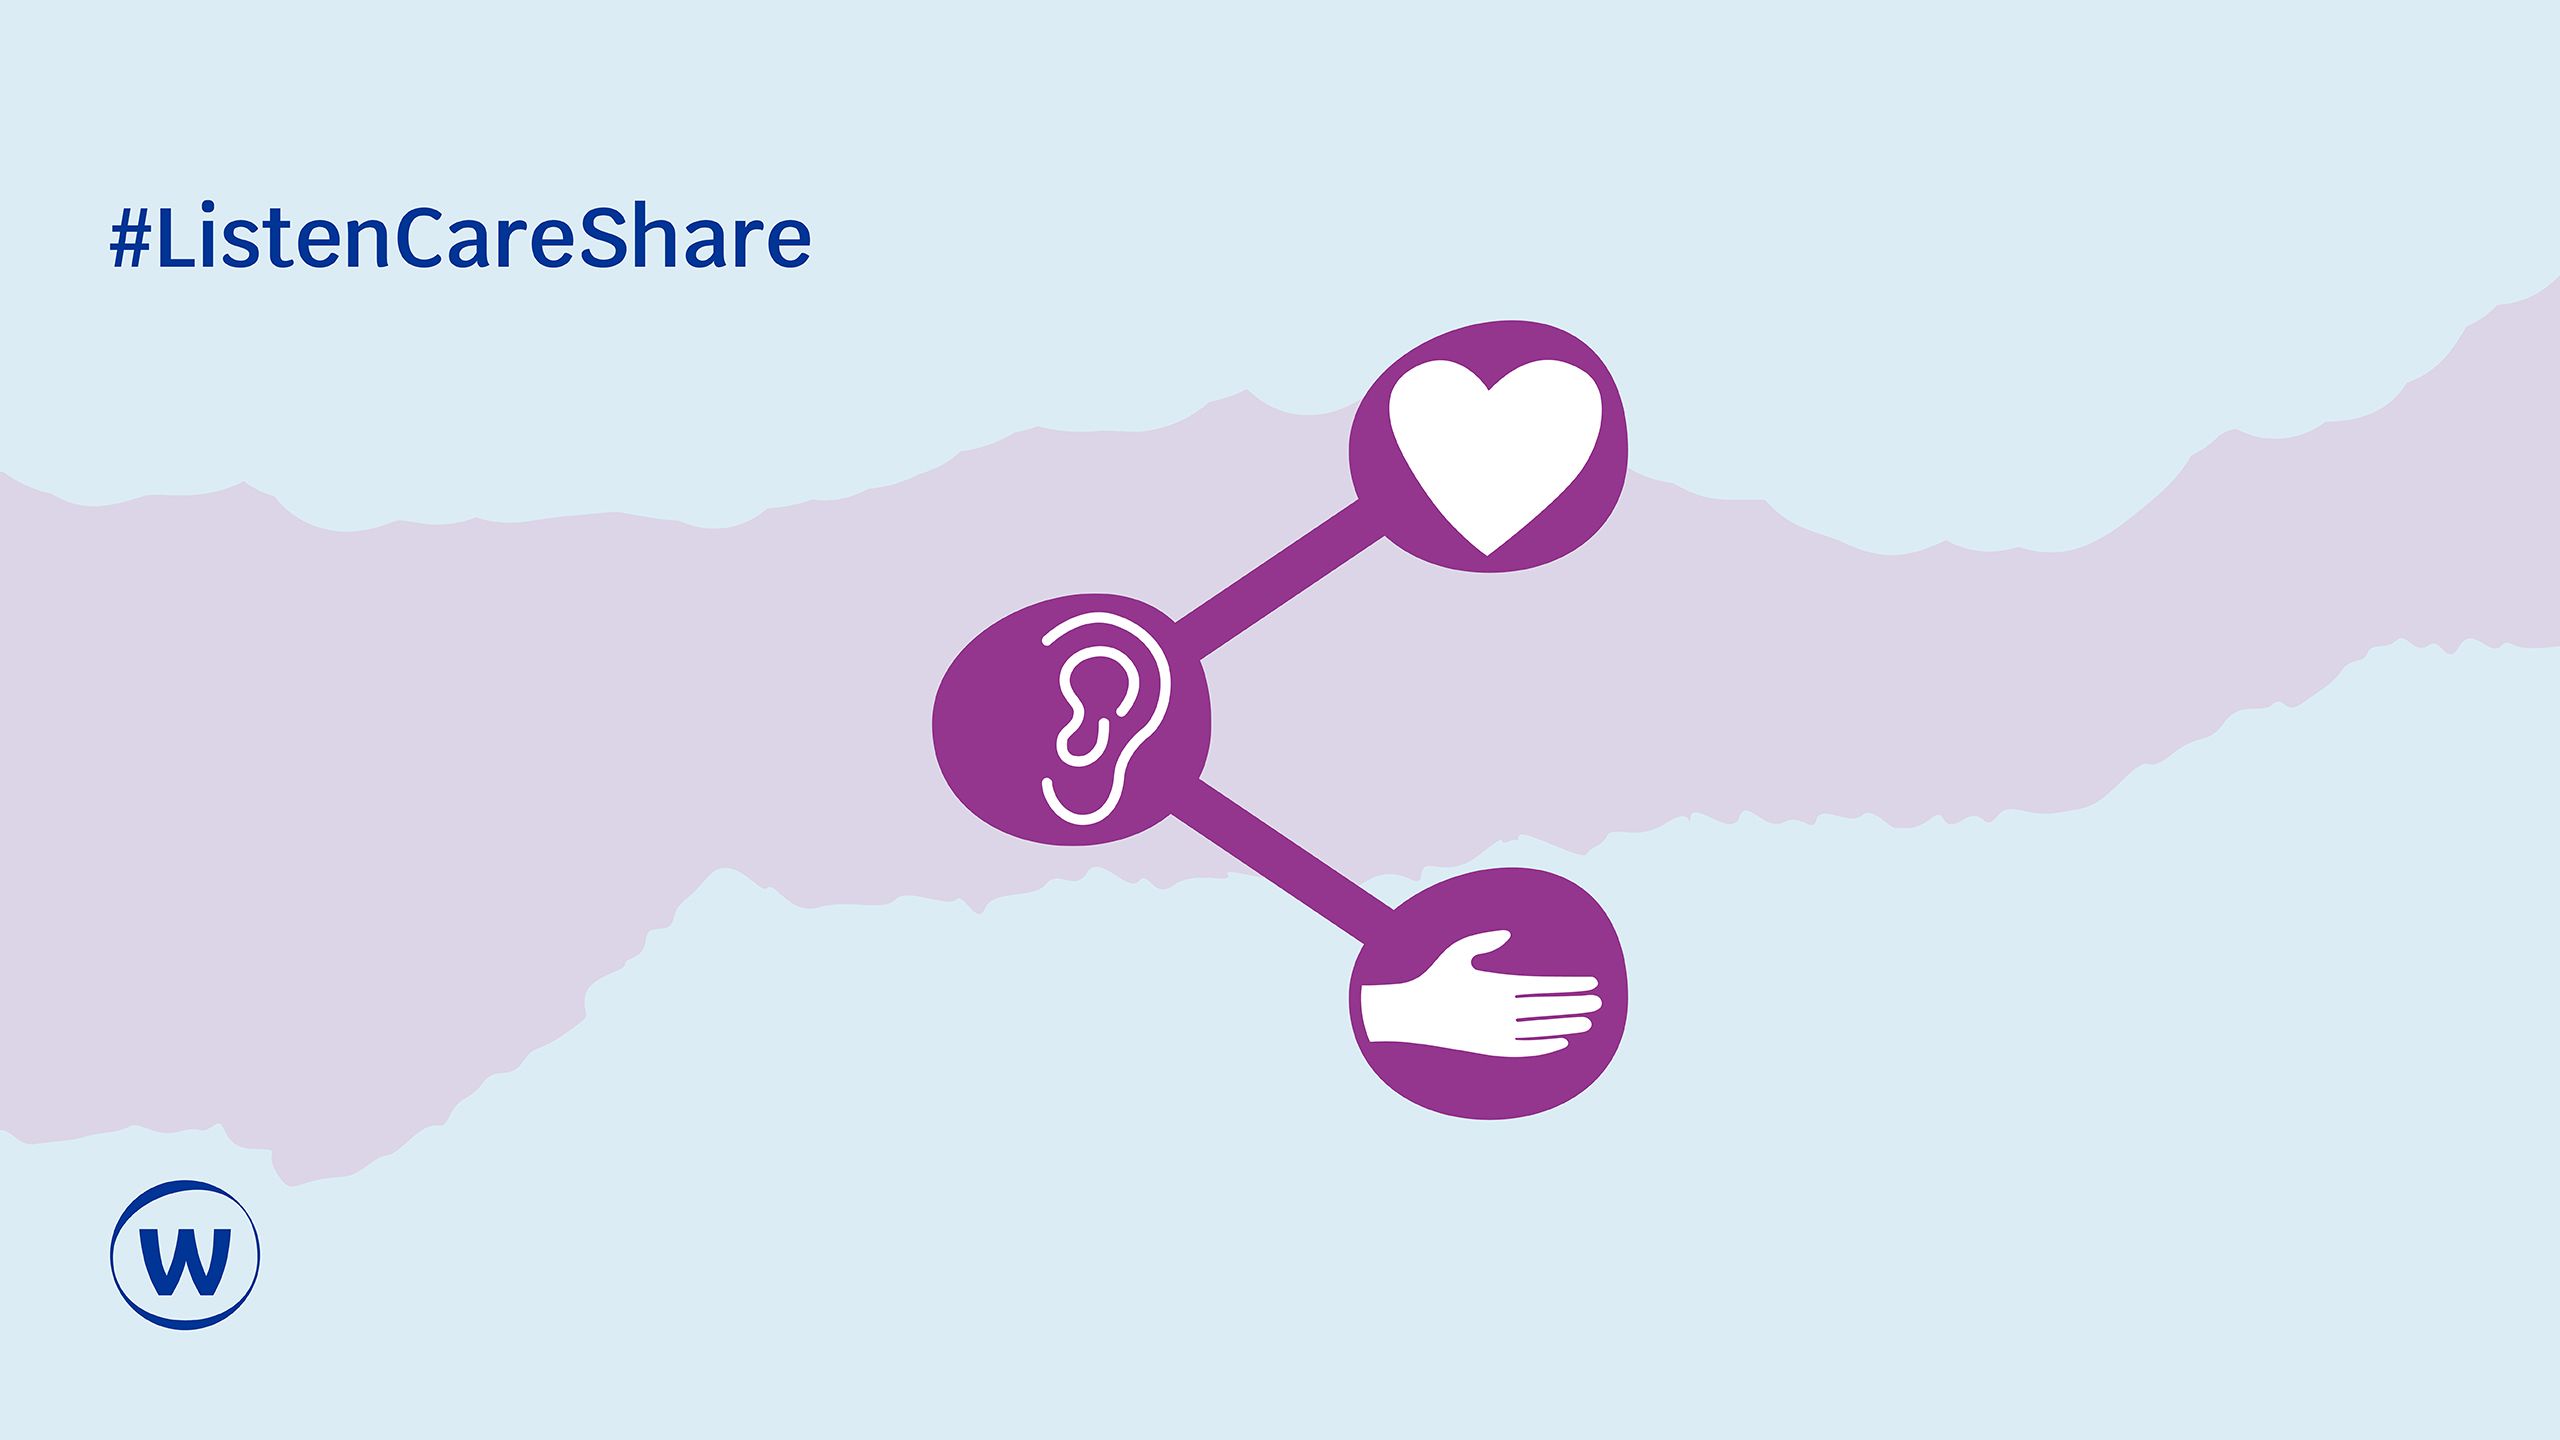 Listen Care Share logo - an ear, a helping hand, a heart